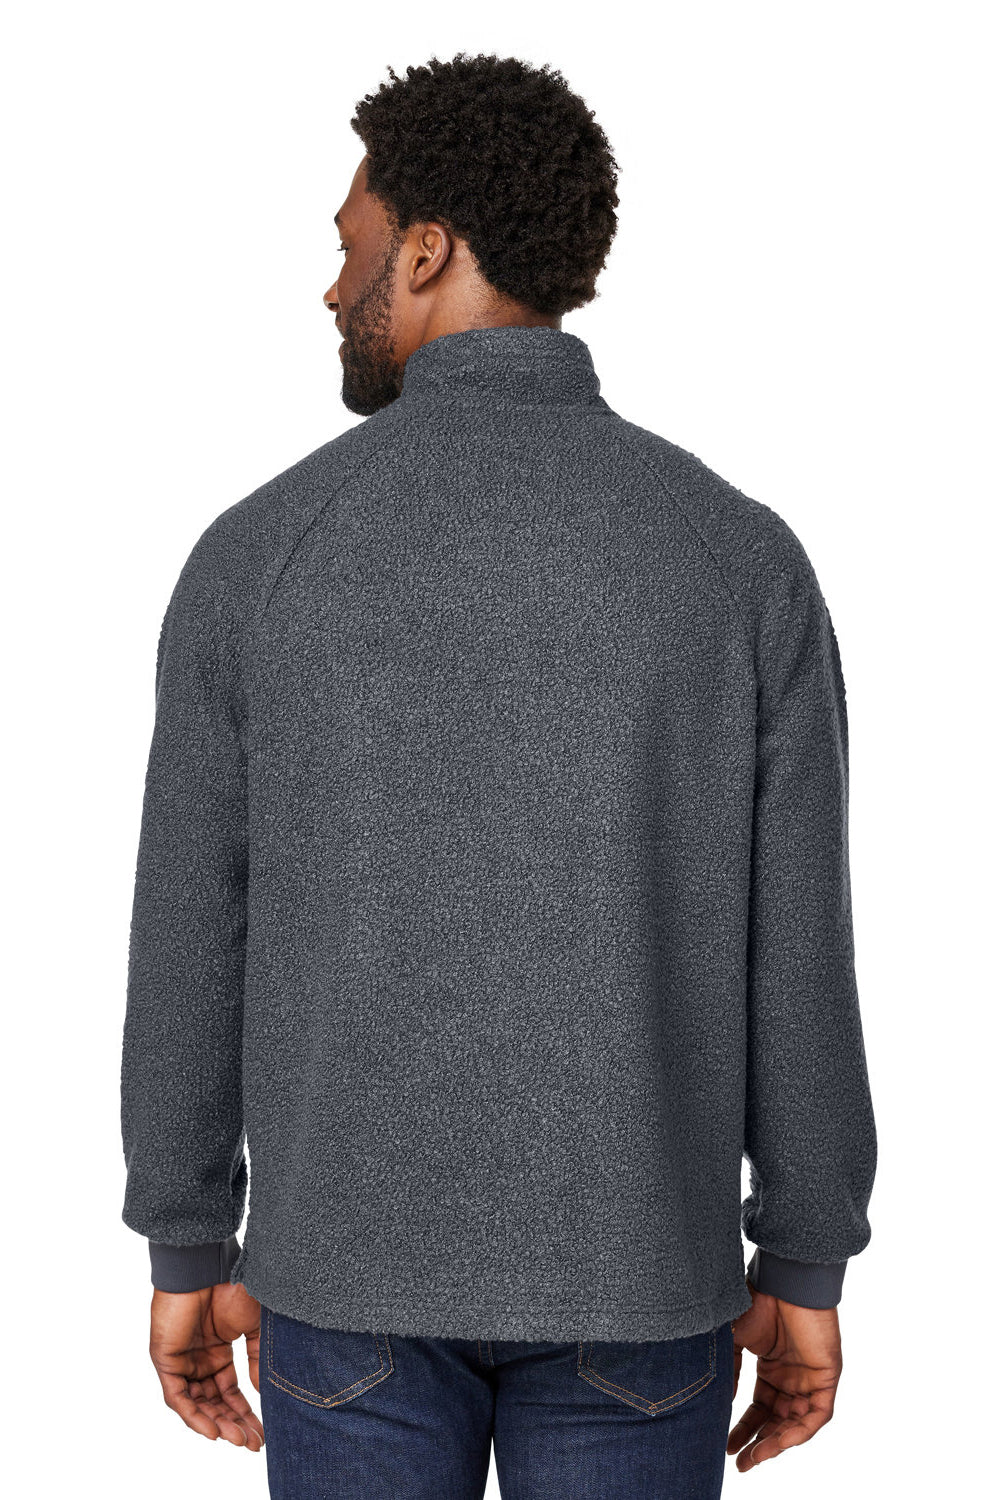 North End NE713 Mens Aura Sweater Fleece 1/4 Zip Sweatshirt Carbon Grey Back